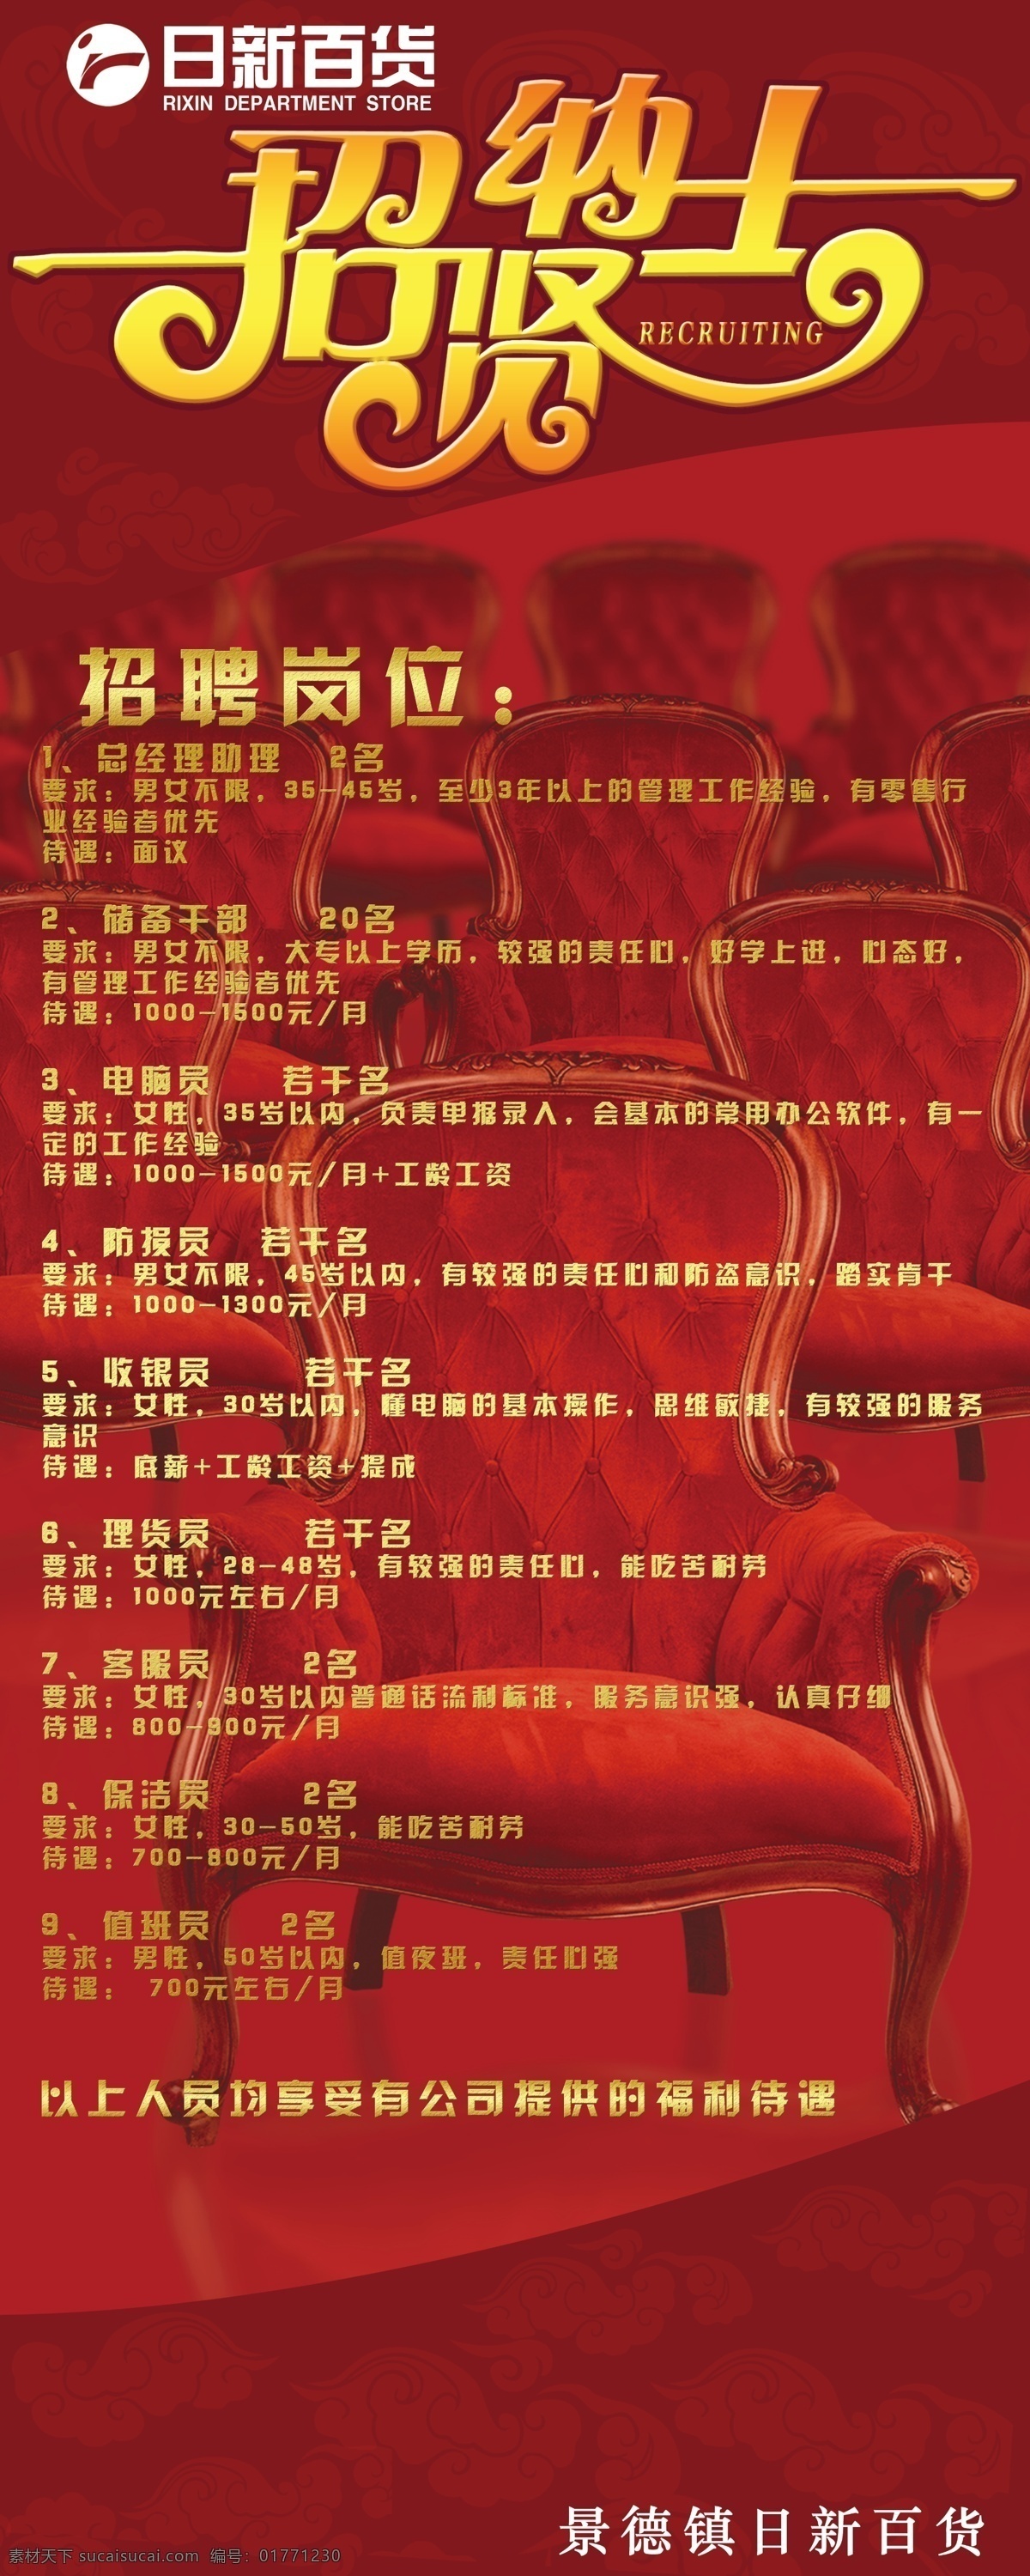 广告设计模板 红色 金色 椅子 易拉宝 源文件 招聘 招贤纳士 模板下载 海报 展板 易拉宝设计